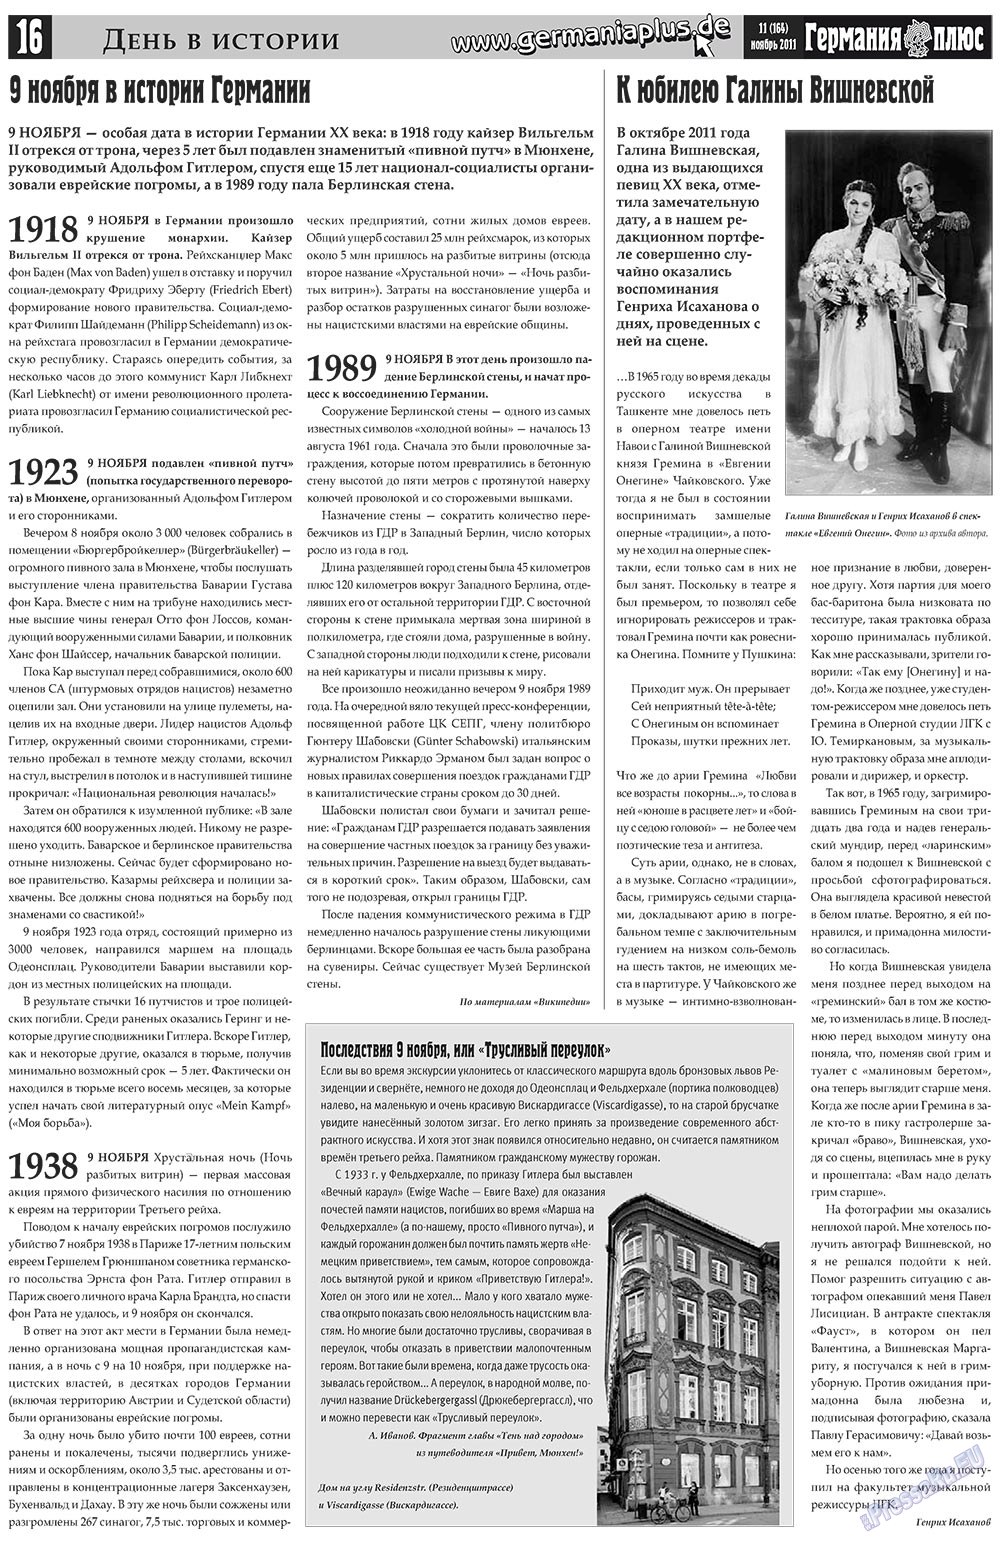 Германия плюс, газета. 2011 №11 стр.16